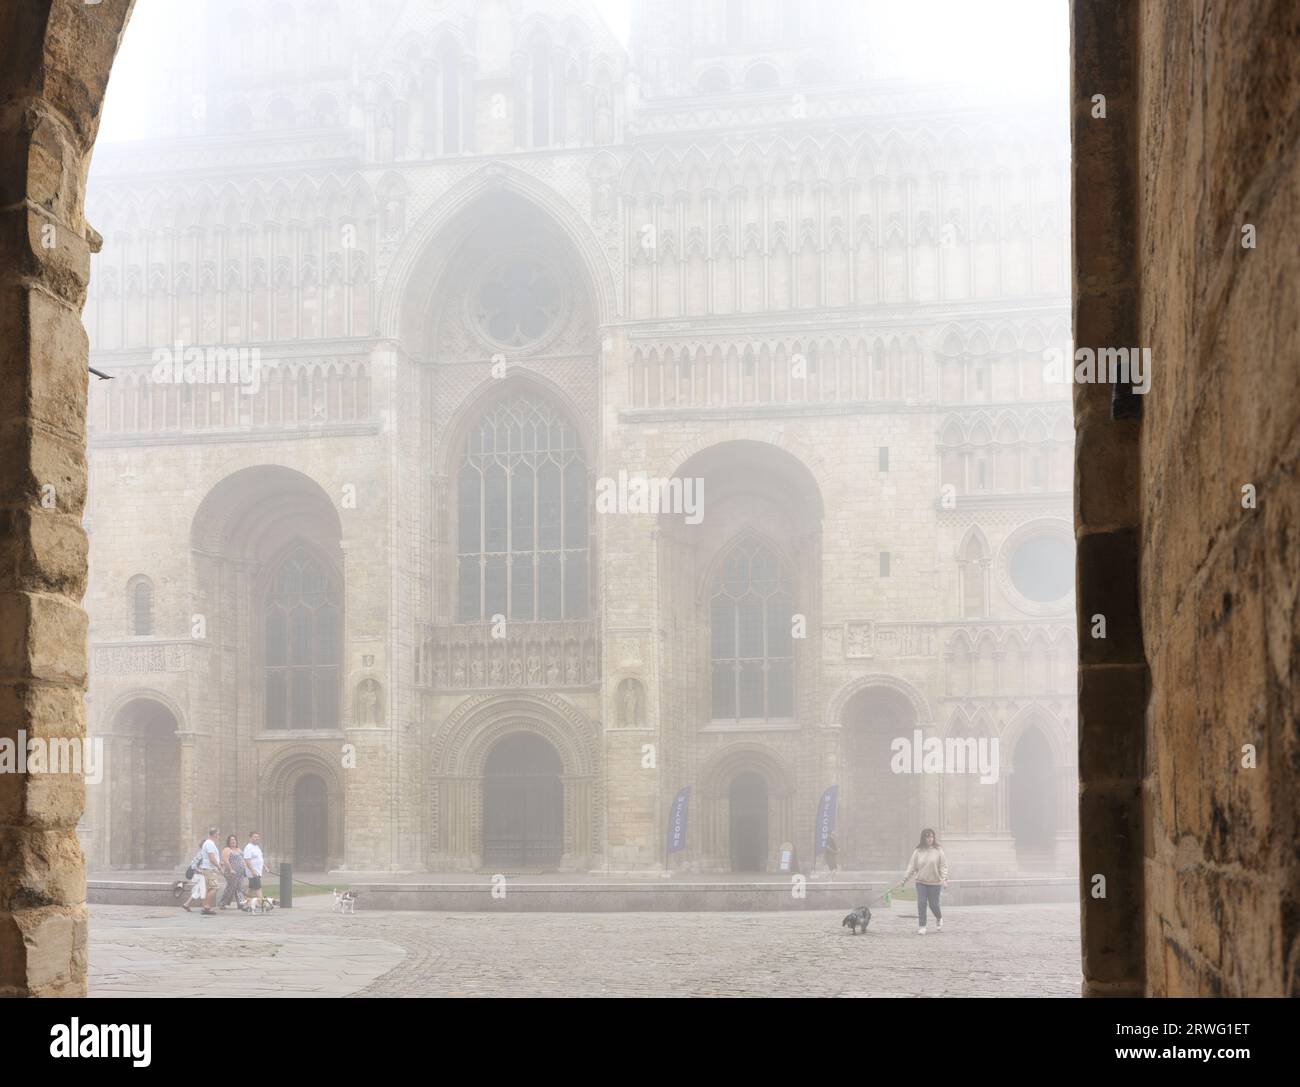 West End e ingresso principale alla cattedrale medievale costruita dai normanni a Lincoln, Inghilterra, in una mattina nebbiosa. Foto Stock